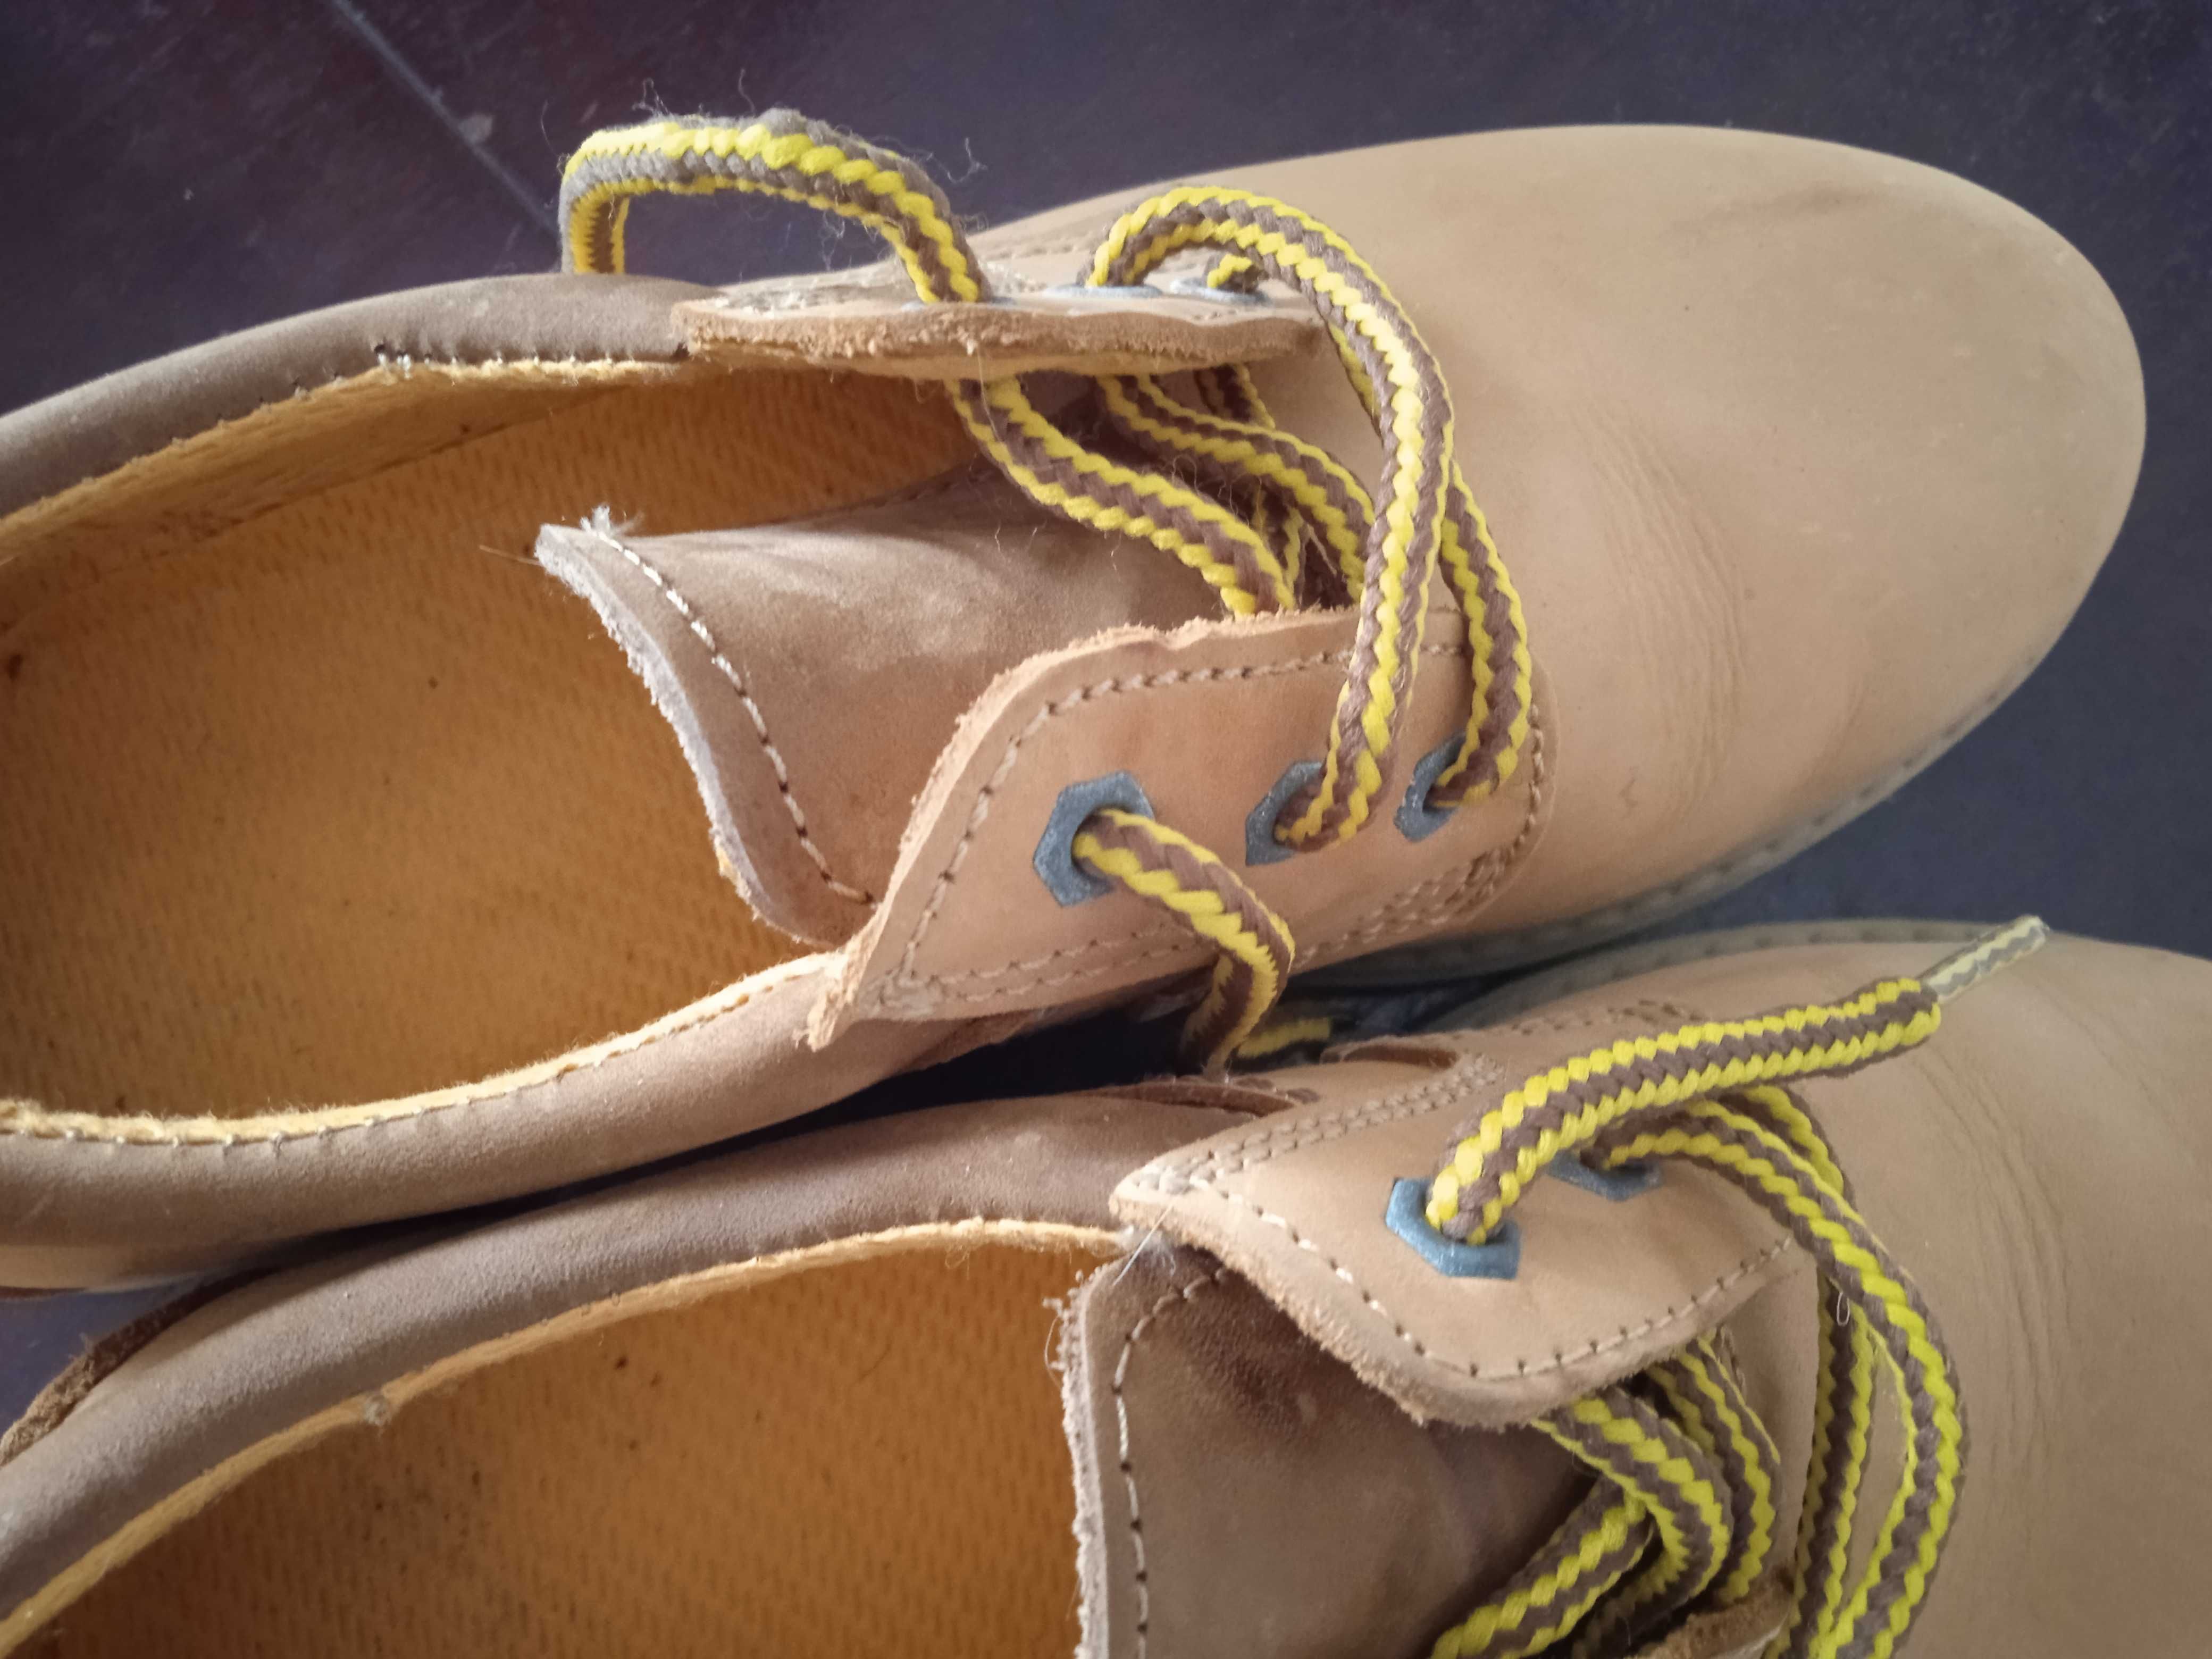 Sapatos amarelo-mostarda novos, 37